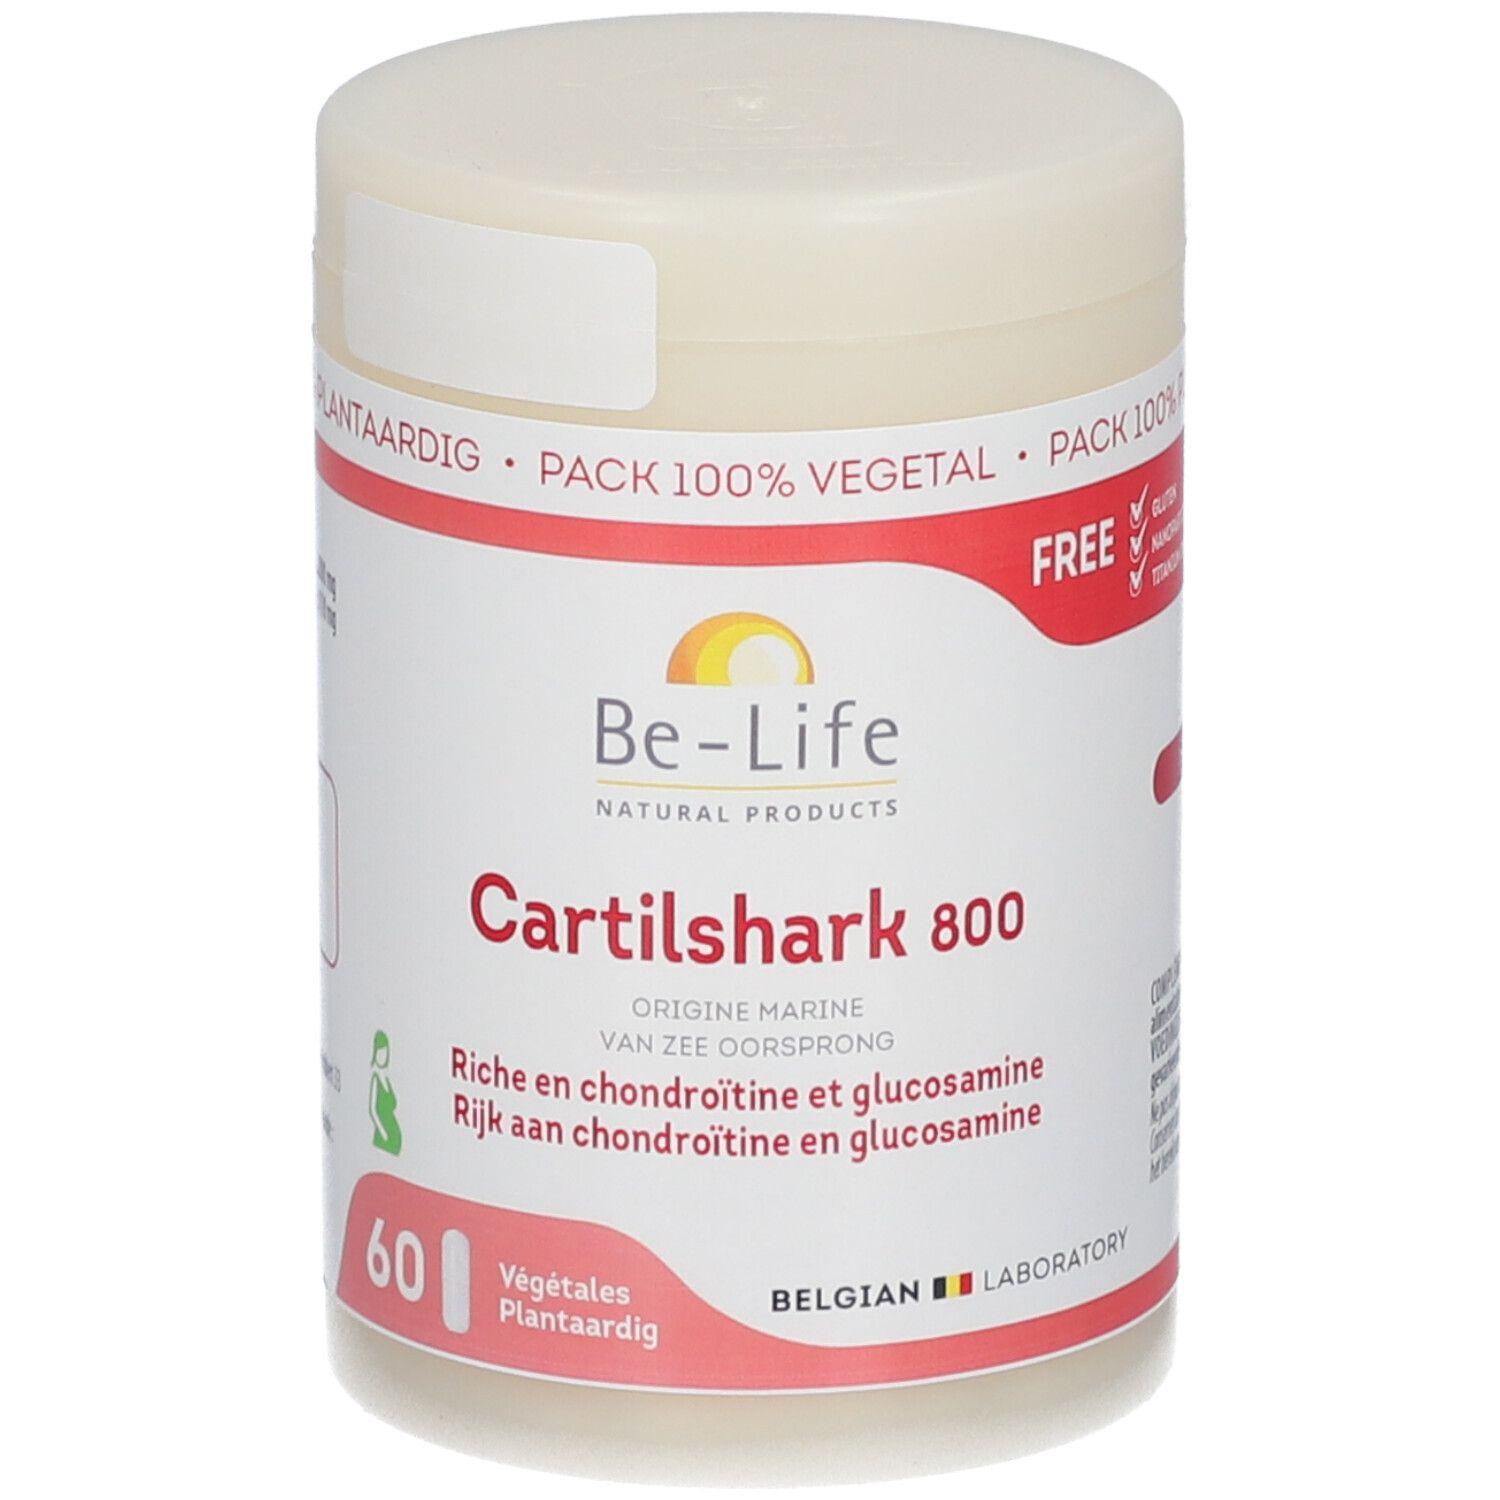 Be-Life Cartilshark 800